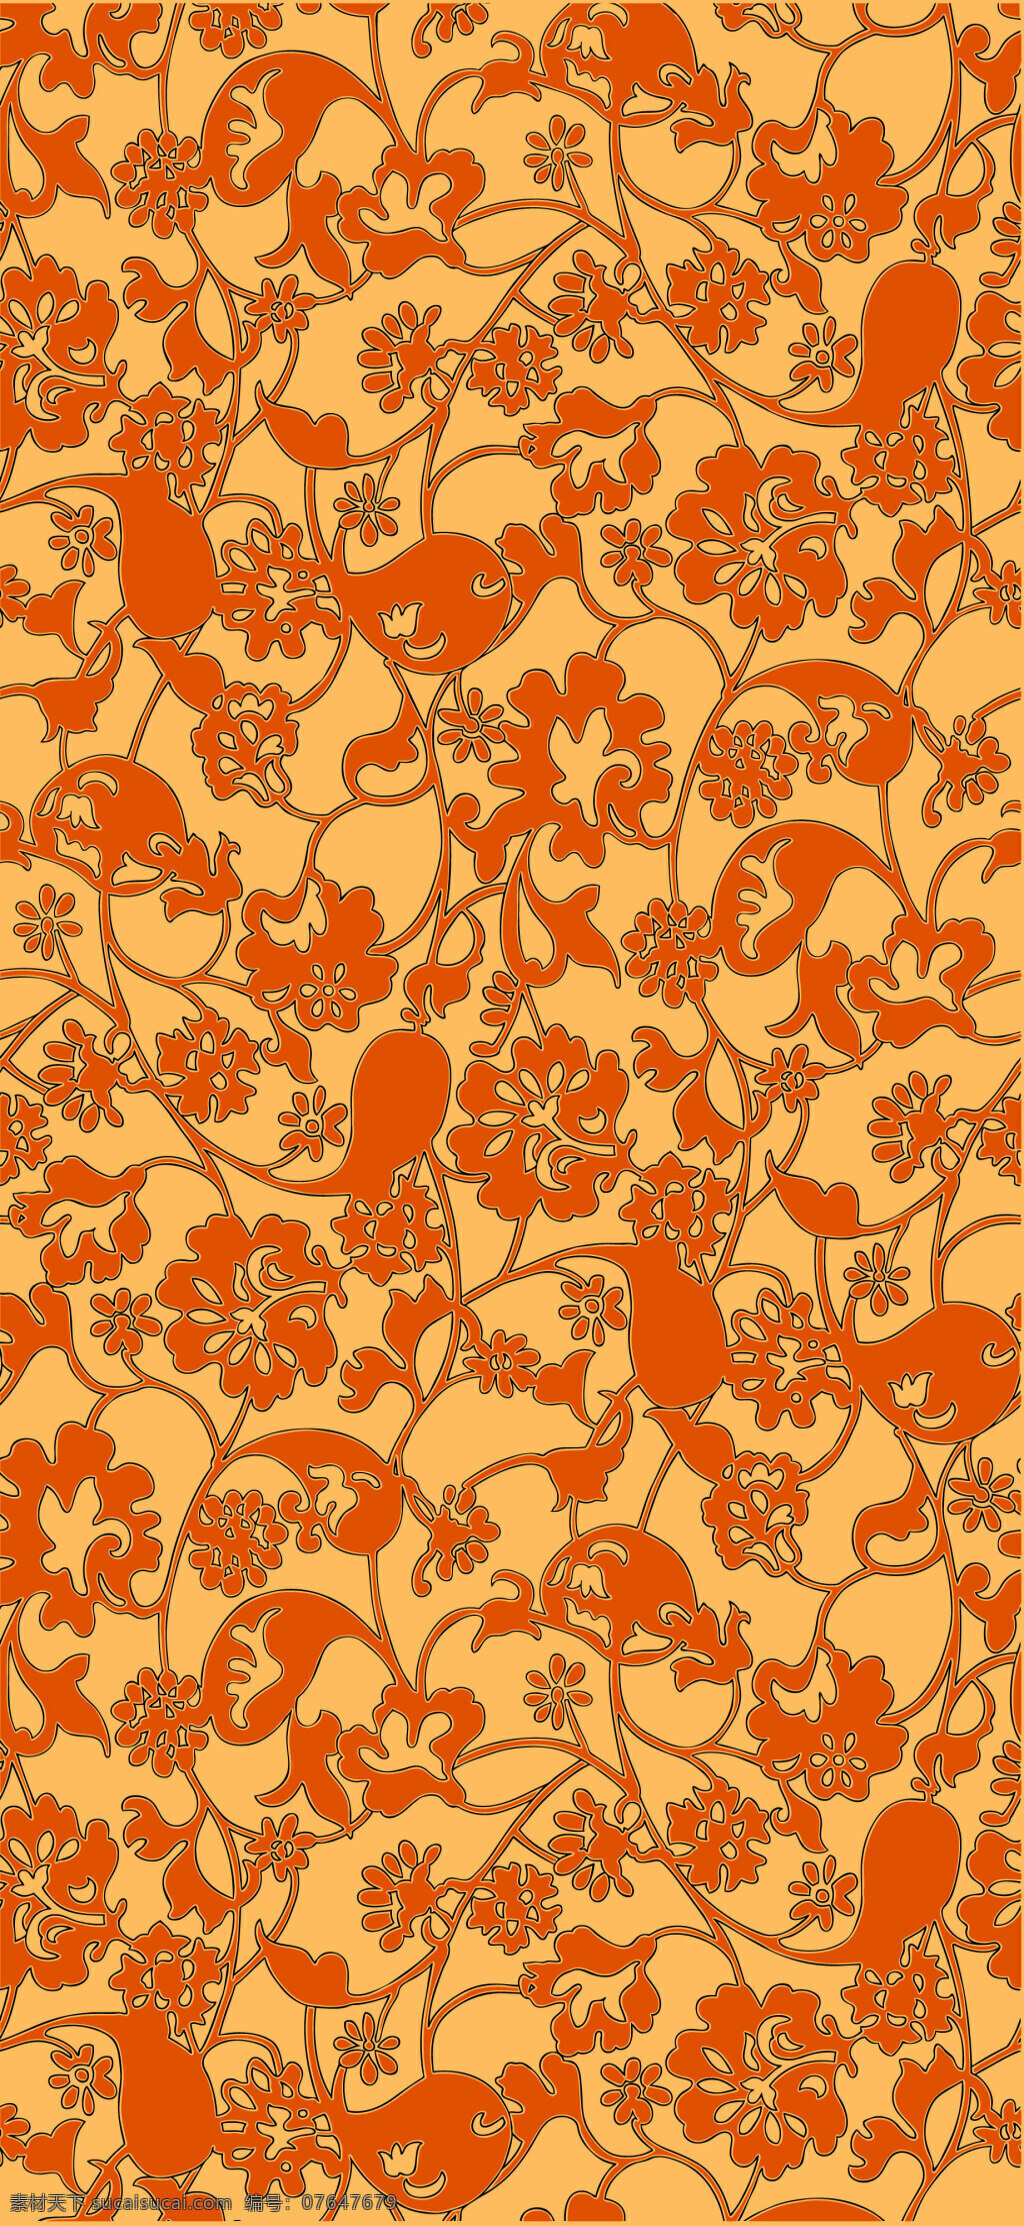 橙色 华丽 花纹 纹样 华丽图案 宫廷图案 服装服饰图案 连续图案 花卉图案 中国风图案 黄色